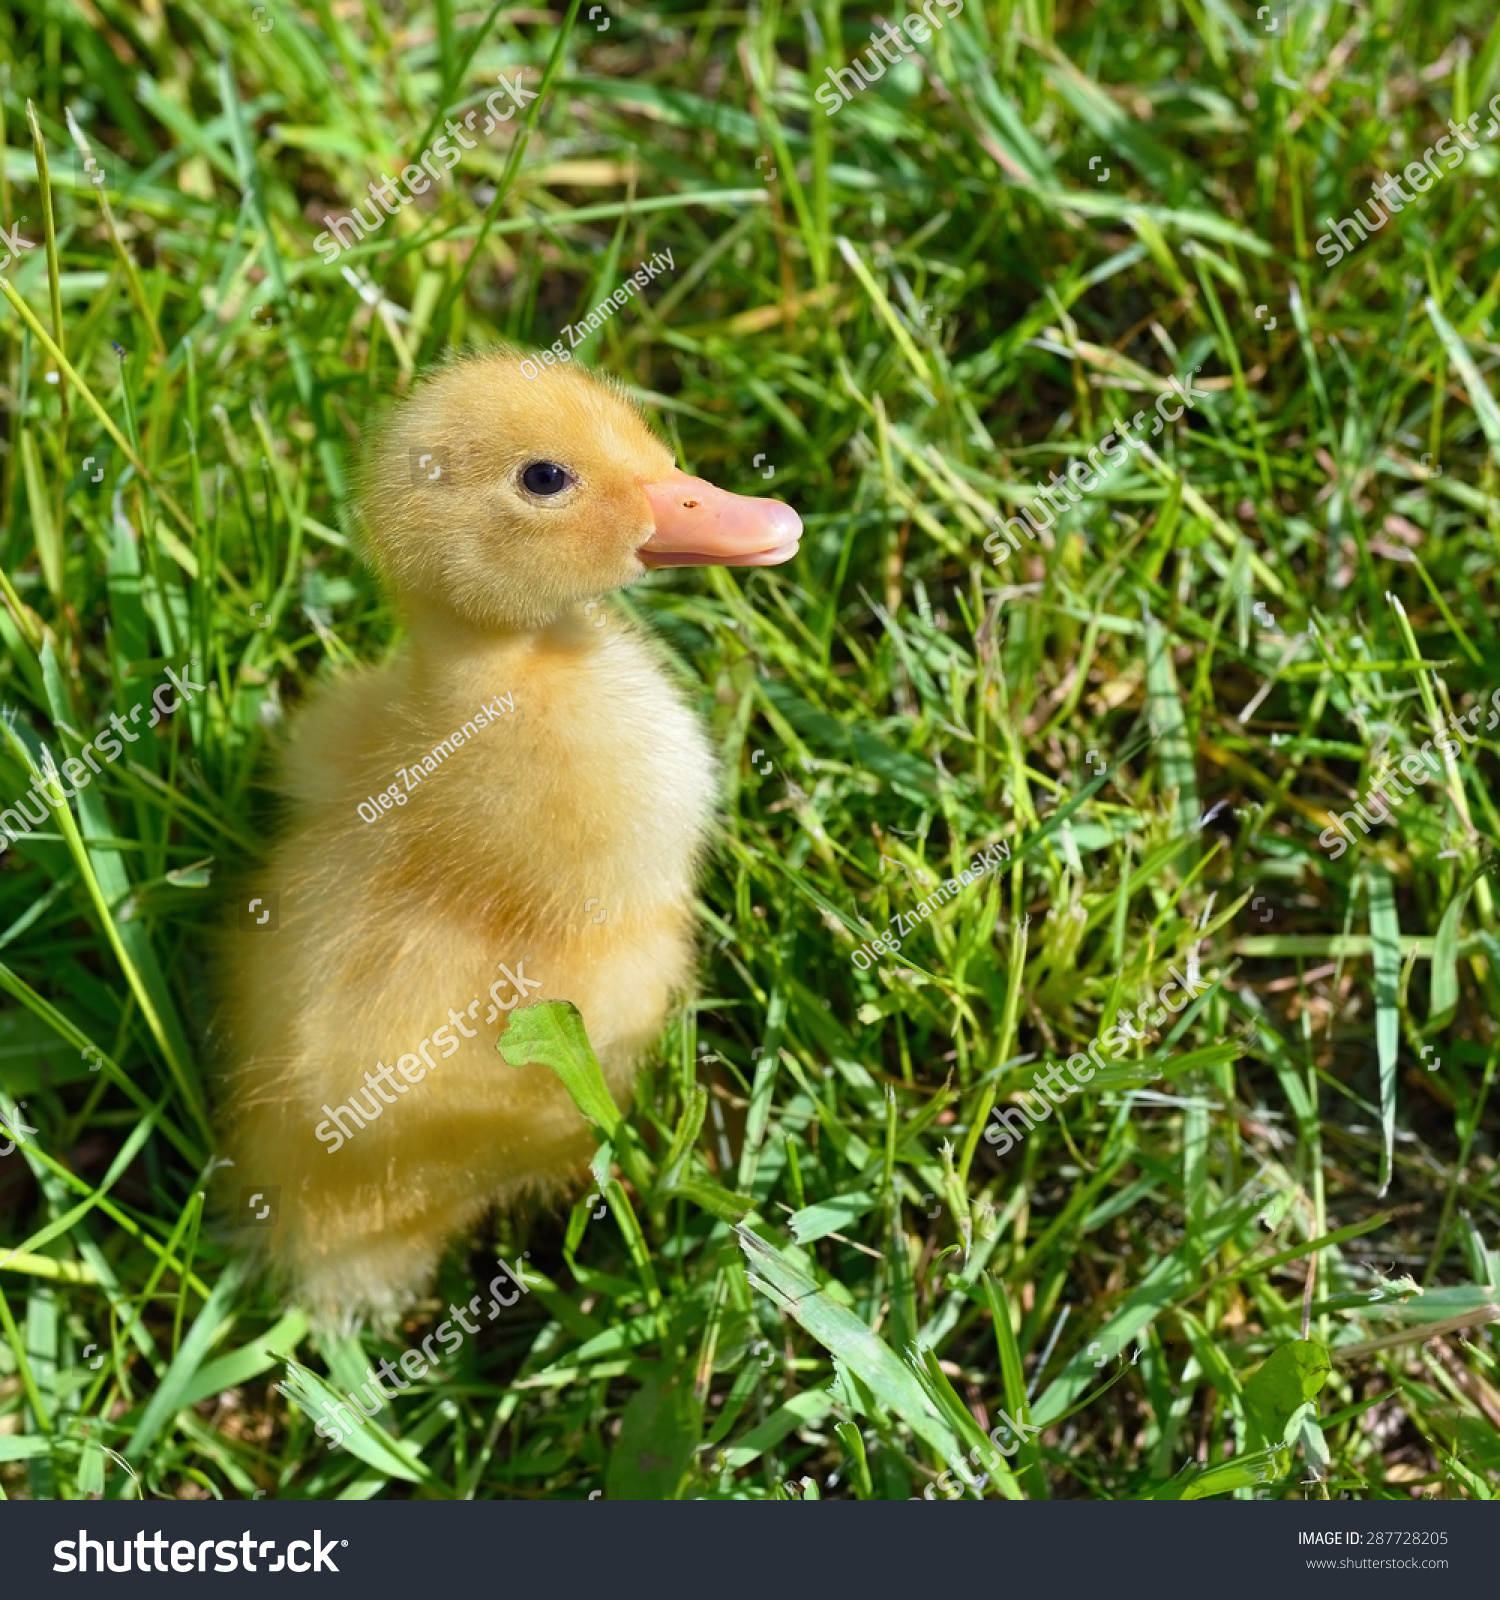 Cute duckling photo